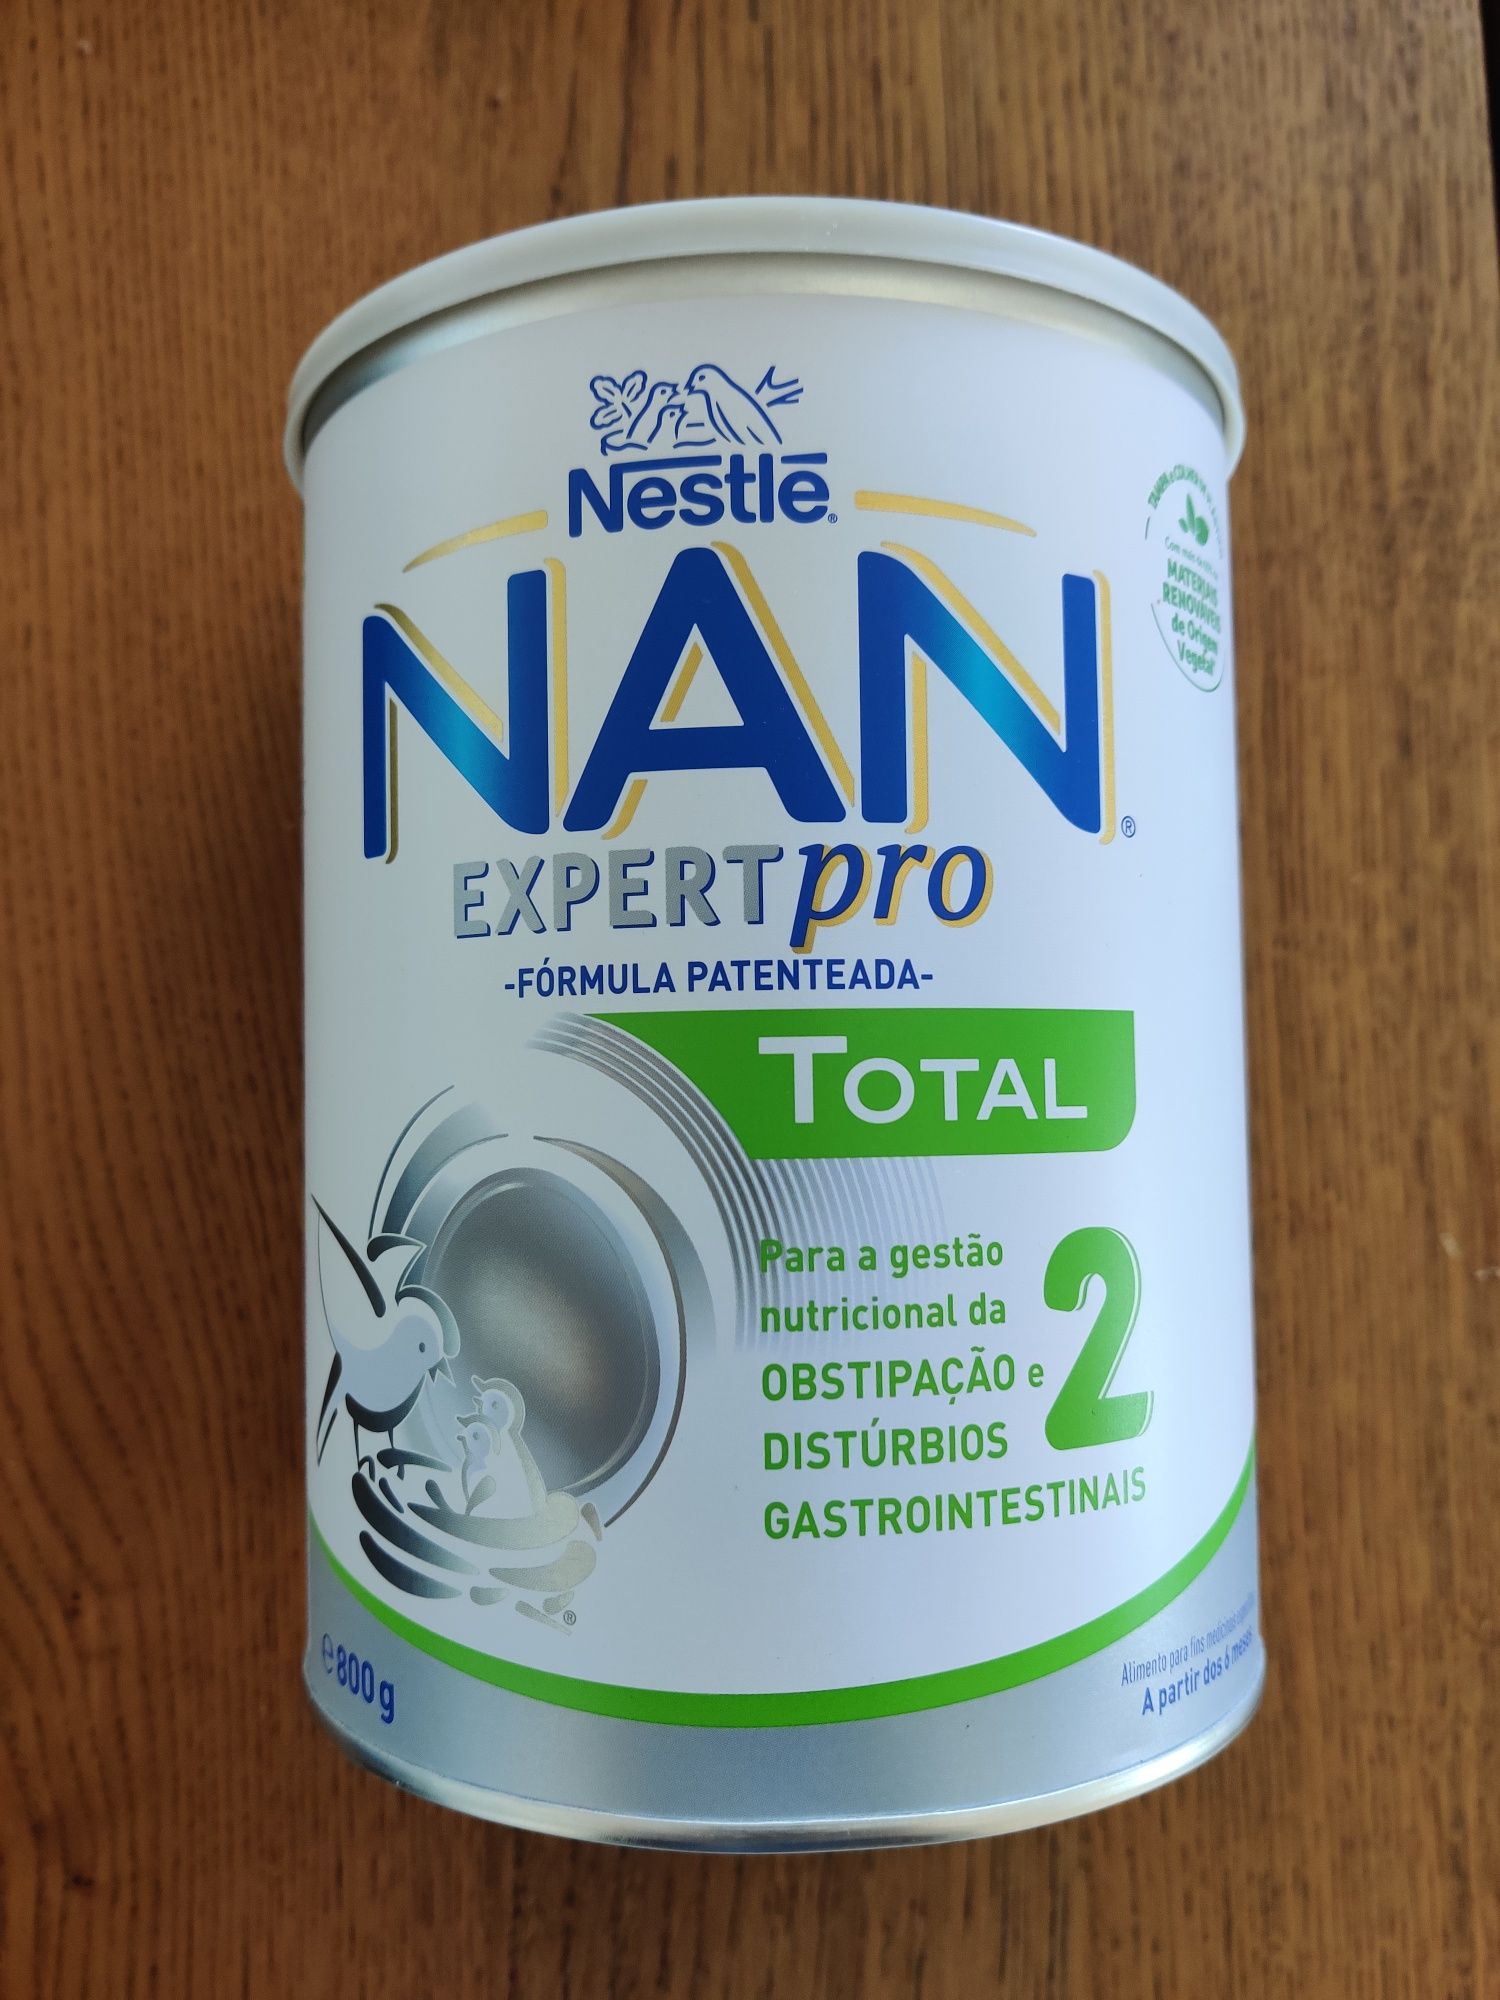 Nan 2 Expert Pro total Nestle novo, por abrir. 800g.